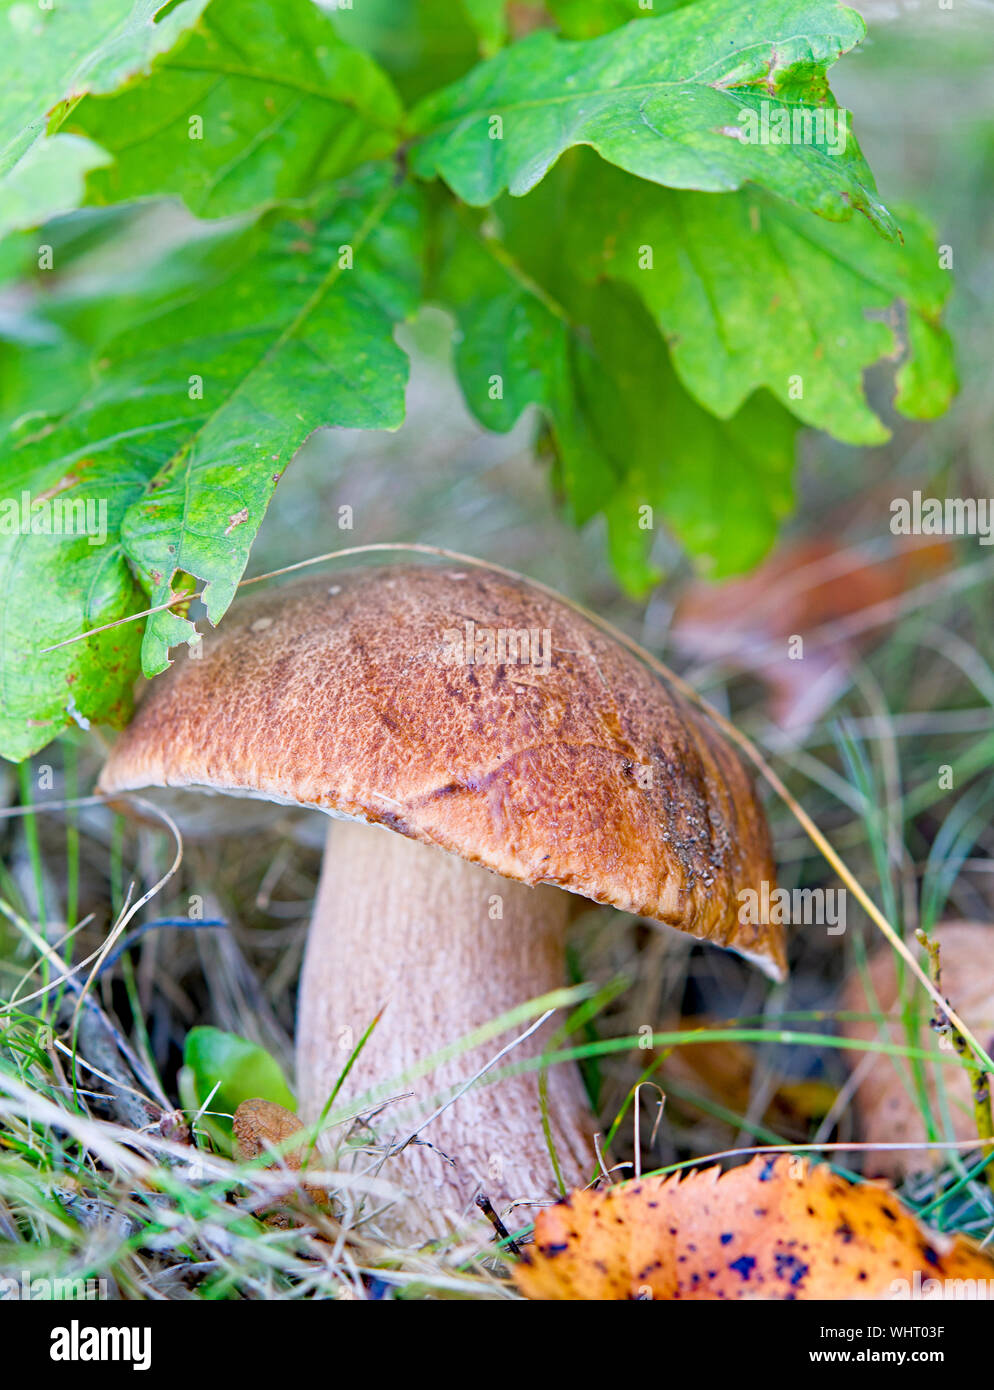 Mushrooms cut in the woods. Mushroom boletus edilus. Popular white Boletus mushrooms in forest. Stock Photo